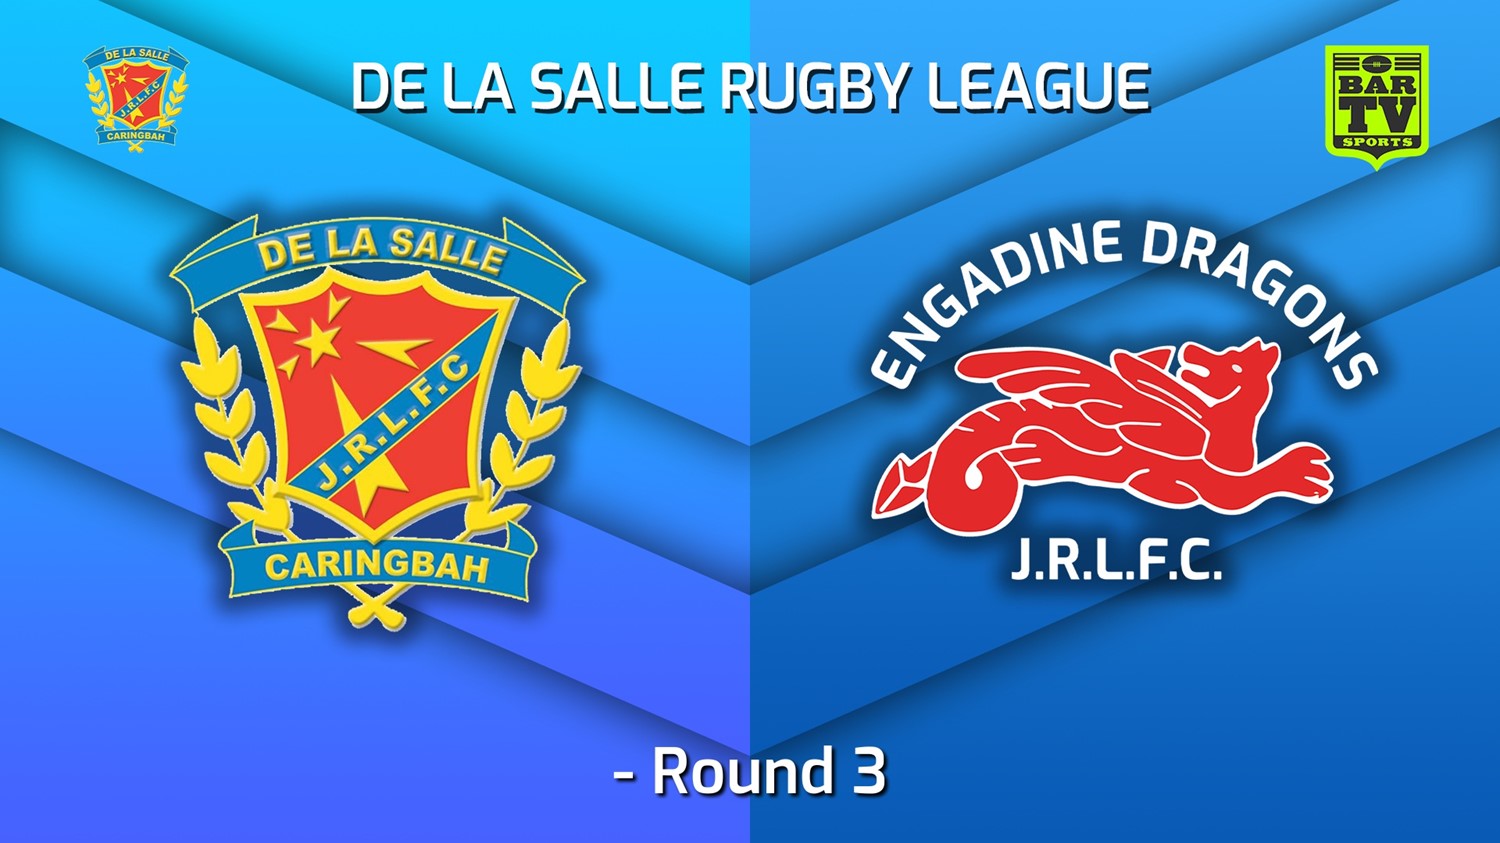 220515-De La Salle - U20s Round 3 - De La Salle v Engadine Dragons (1) Slate Image